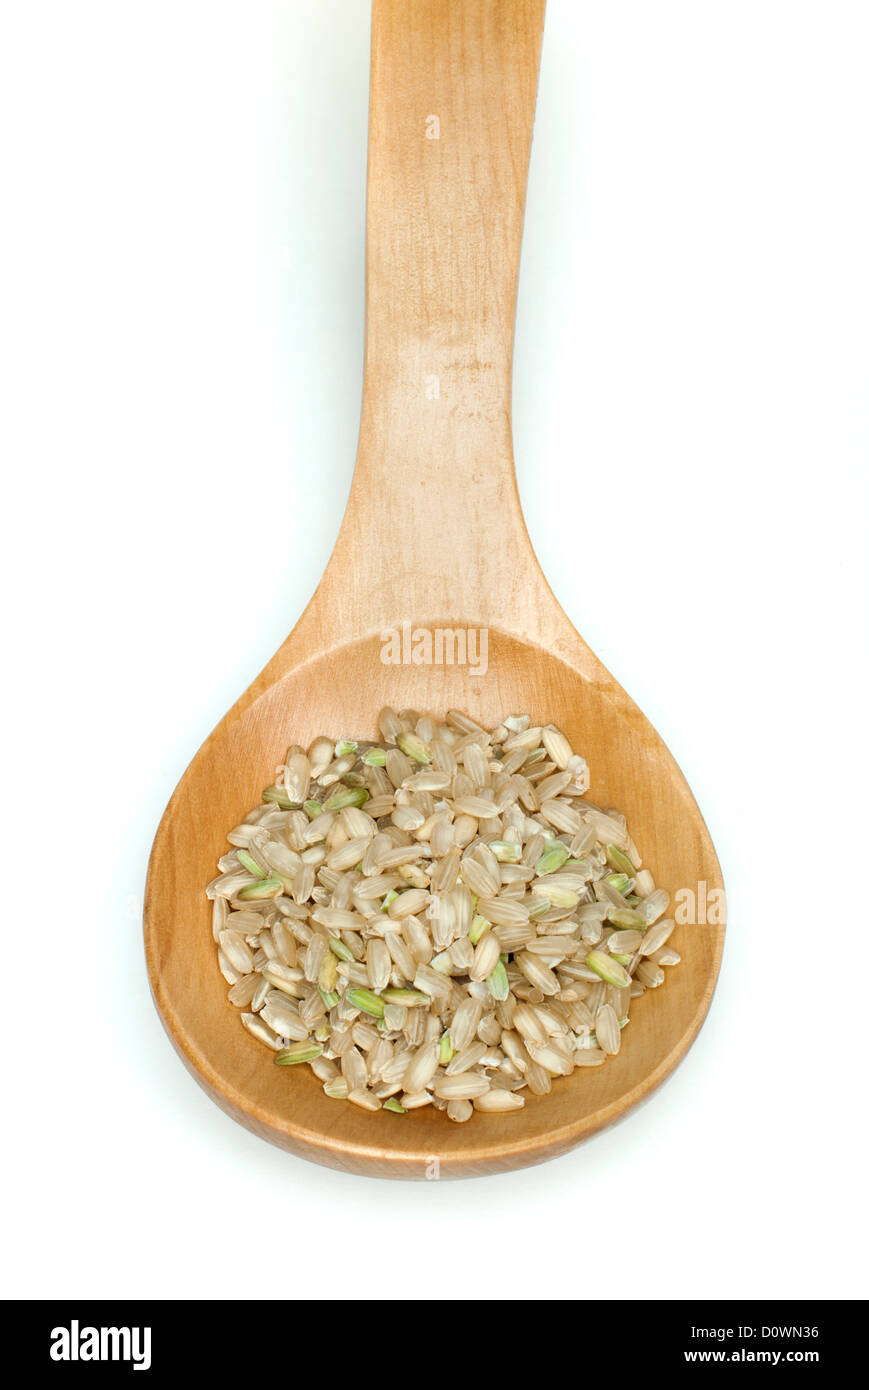 Partie intégrante du riz dans la cuillère en bois sur fond blanc Banque D'Images